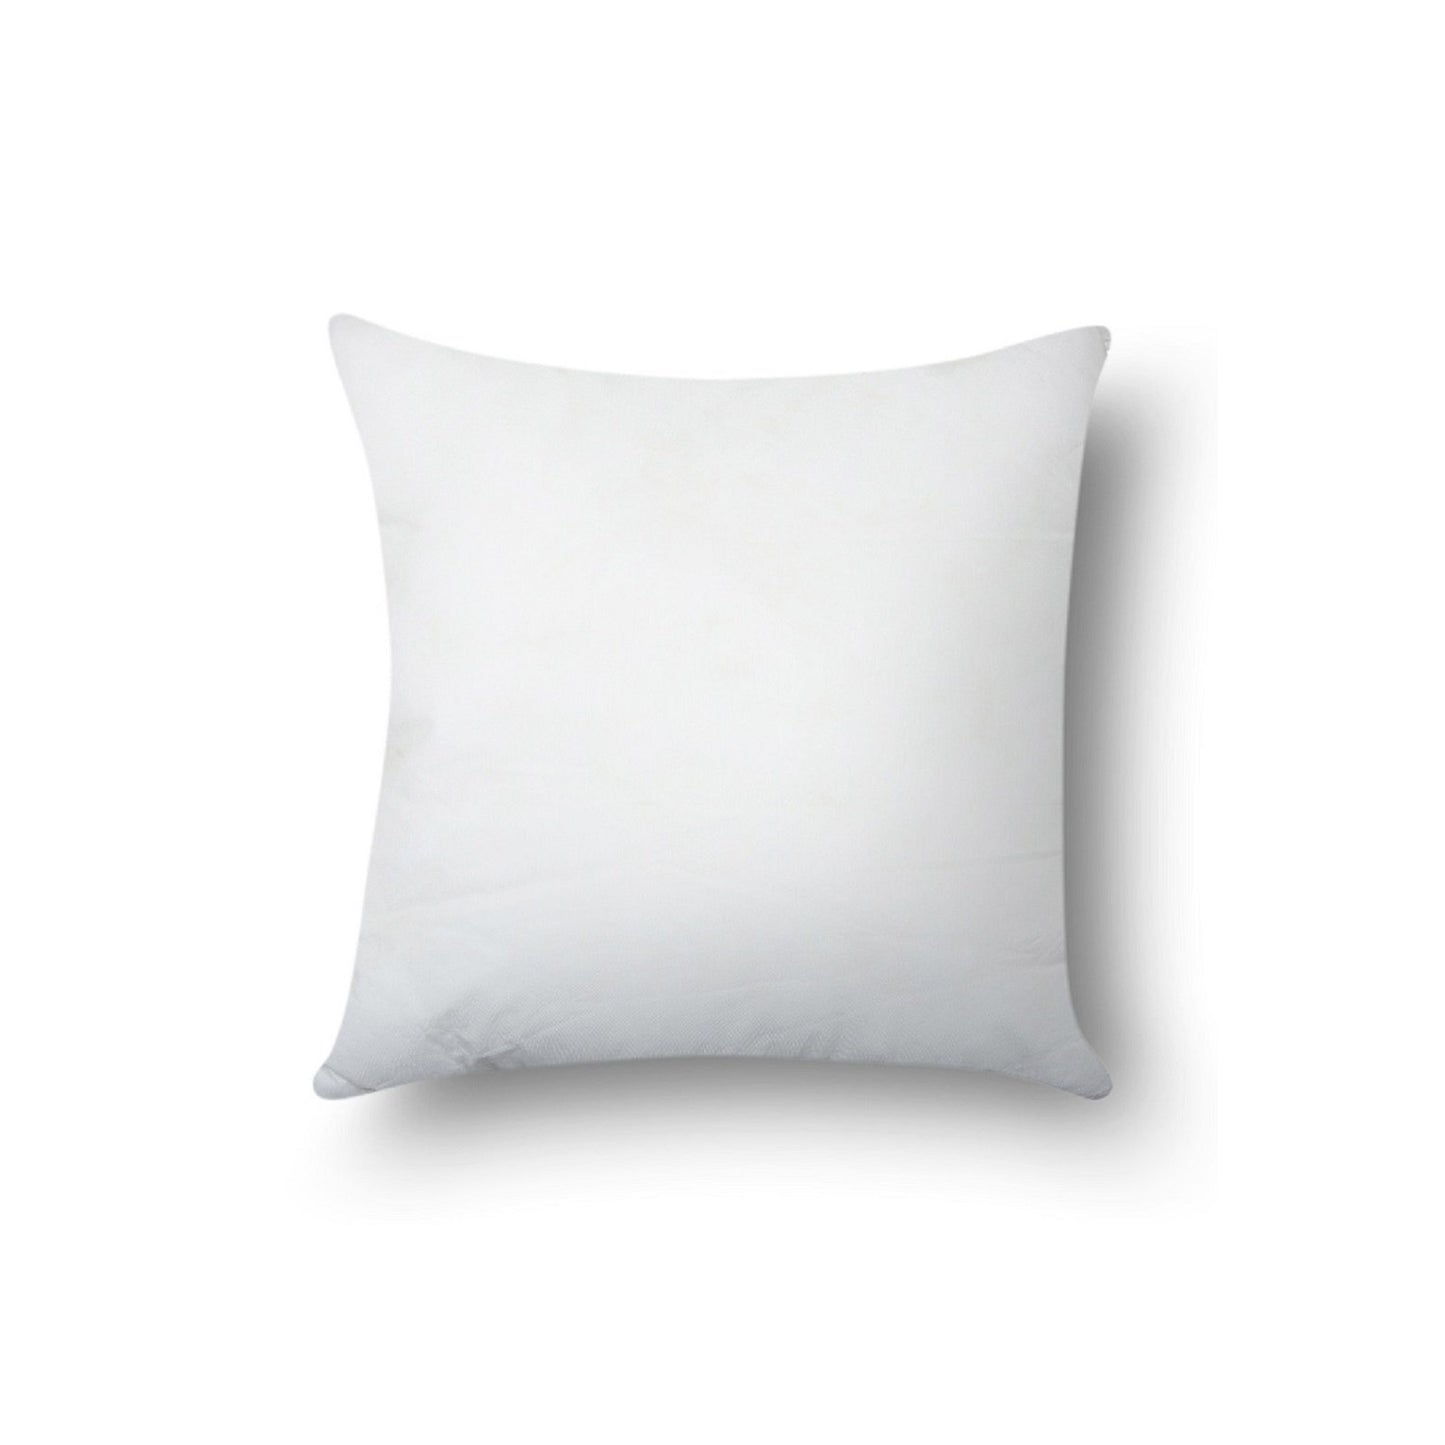 SWHF Cushion Filler 46 X 46 Cm (18 x 18 Inch) - SWHF